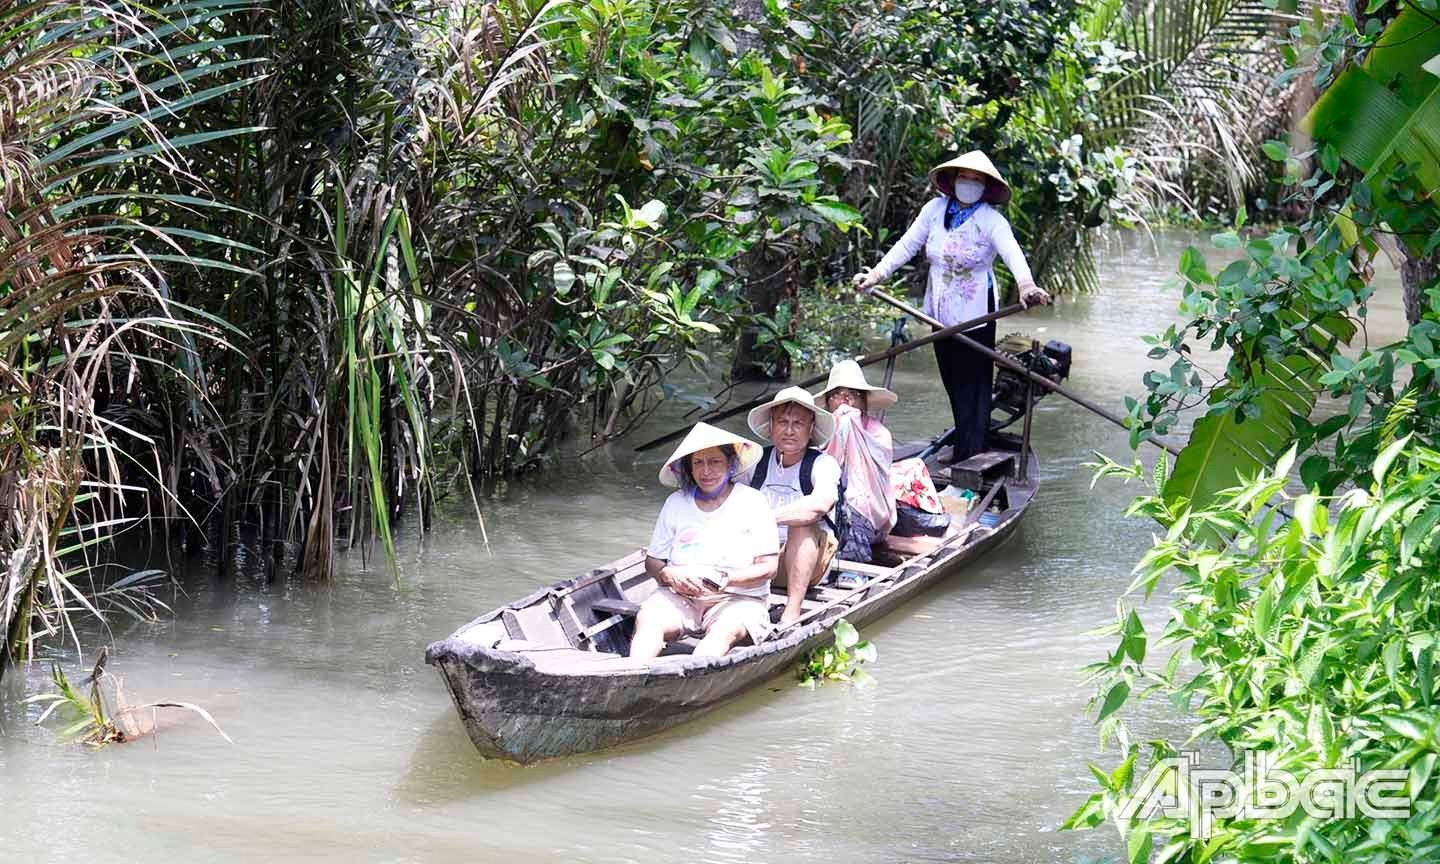 Du khách trải nghiệm đi đò chèo trên các con kinh rợp bóng dừa nước của cù lao Tân Phong.